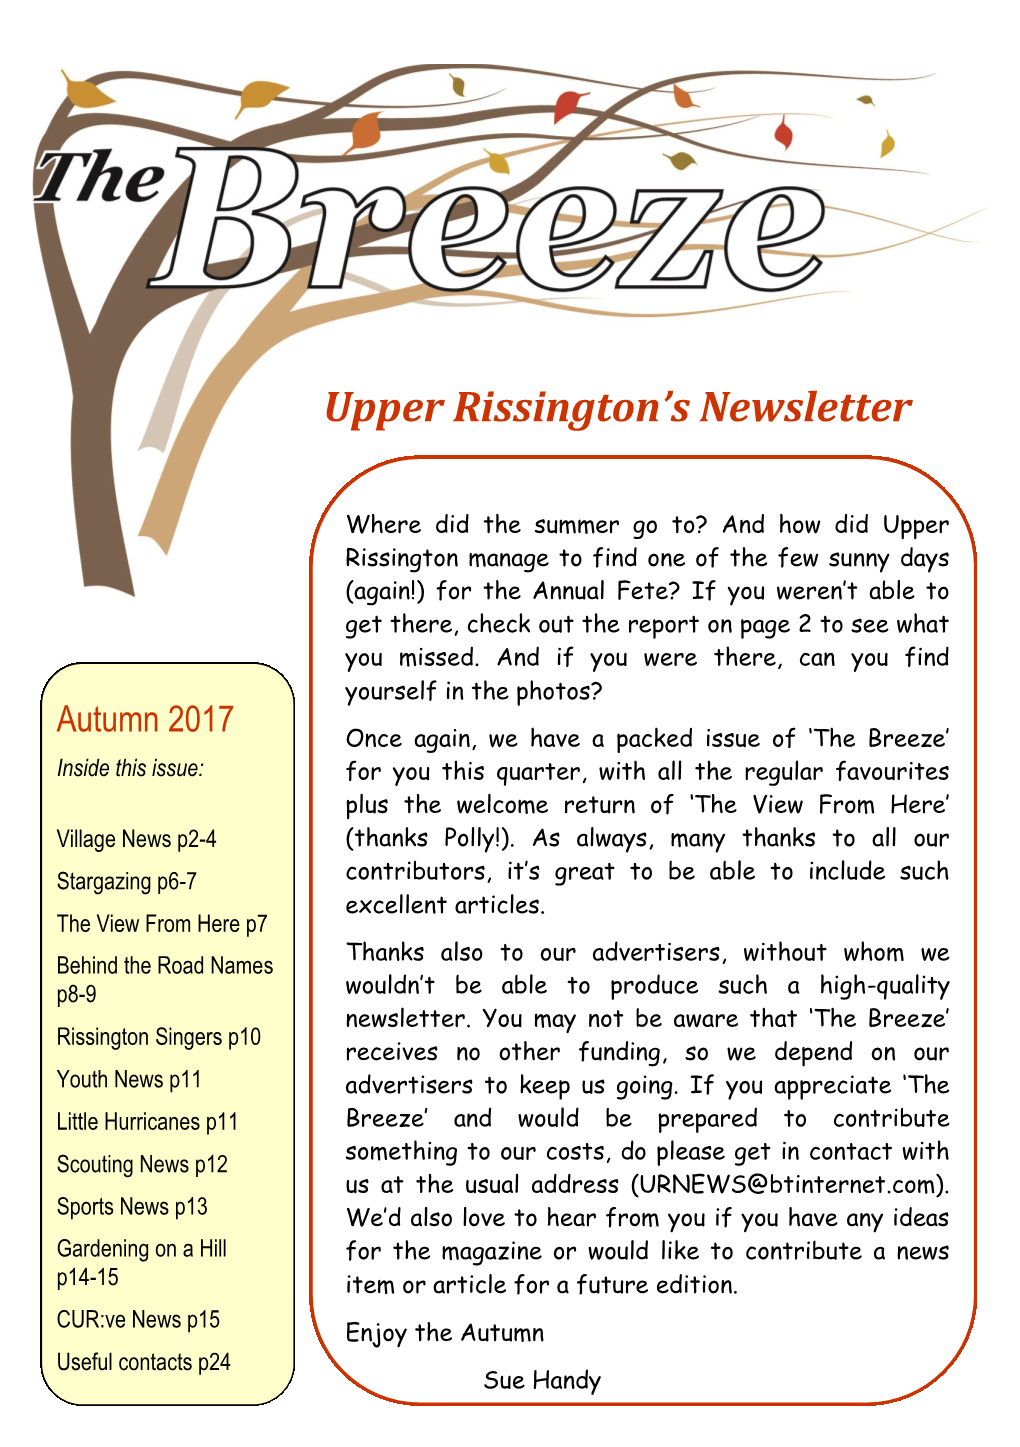 Upper Rissington's Newsletter